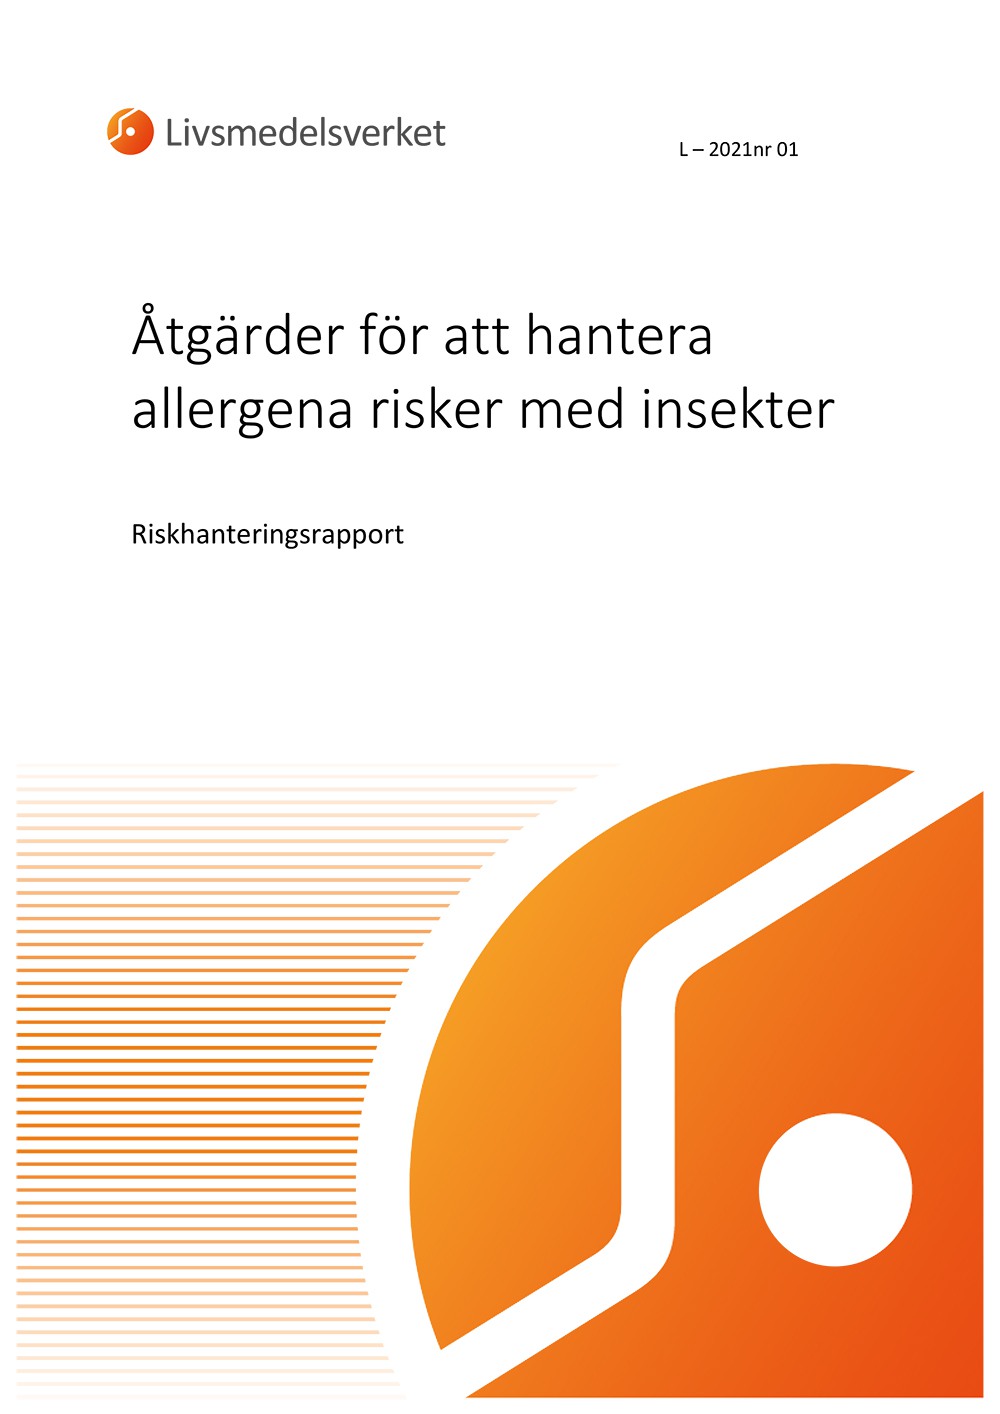 Framsida på rapporten L 2021 nr 01 - Åtgärder för att hantera allergena risker med insekter